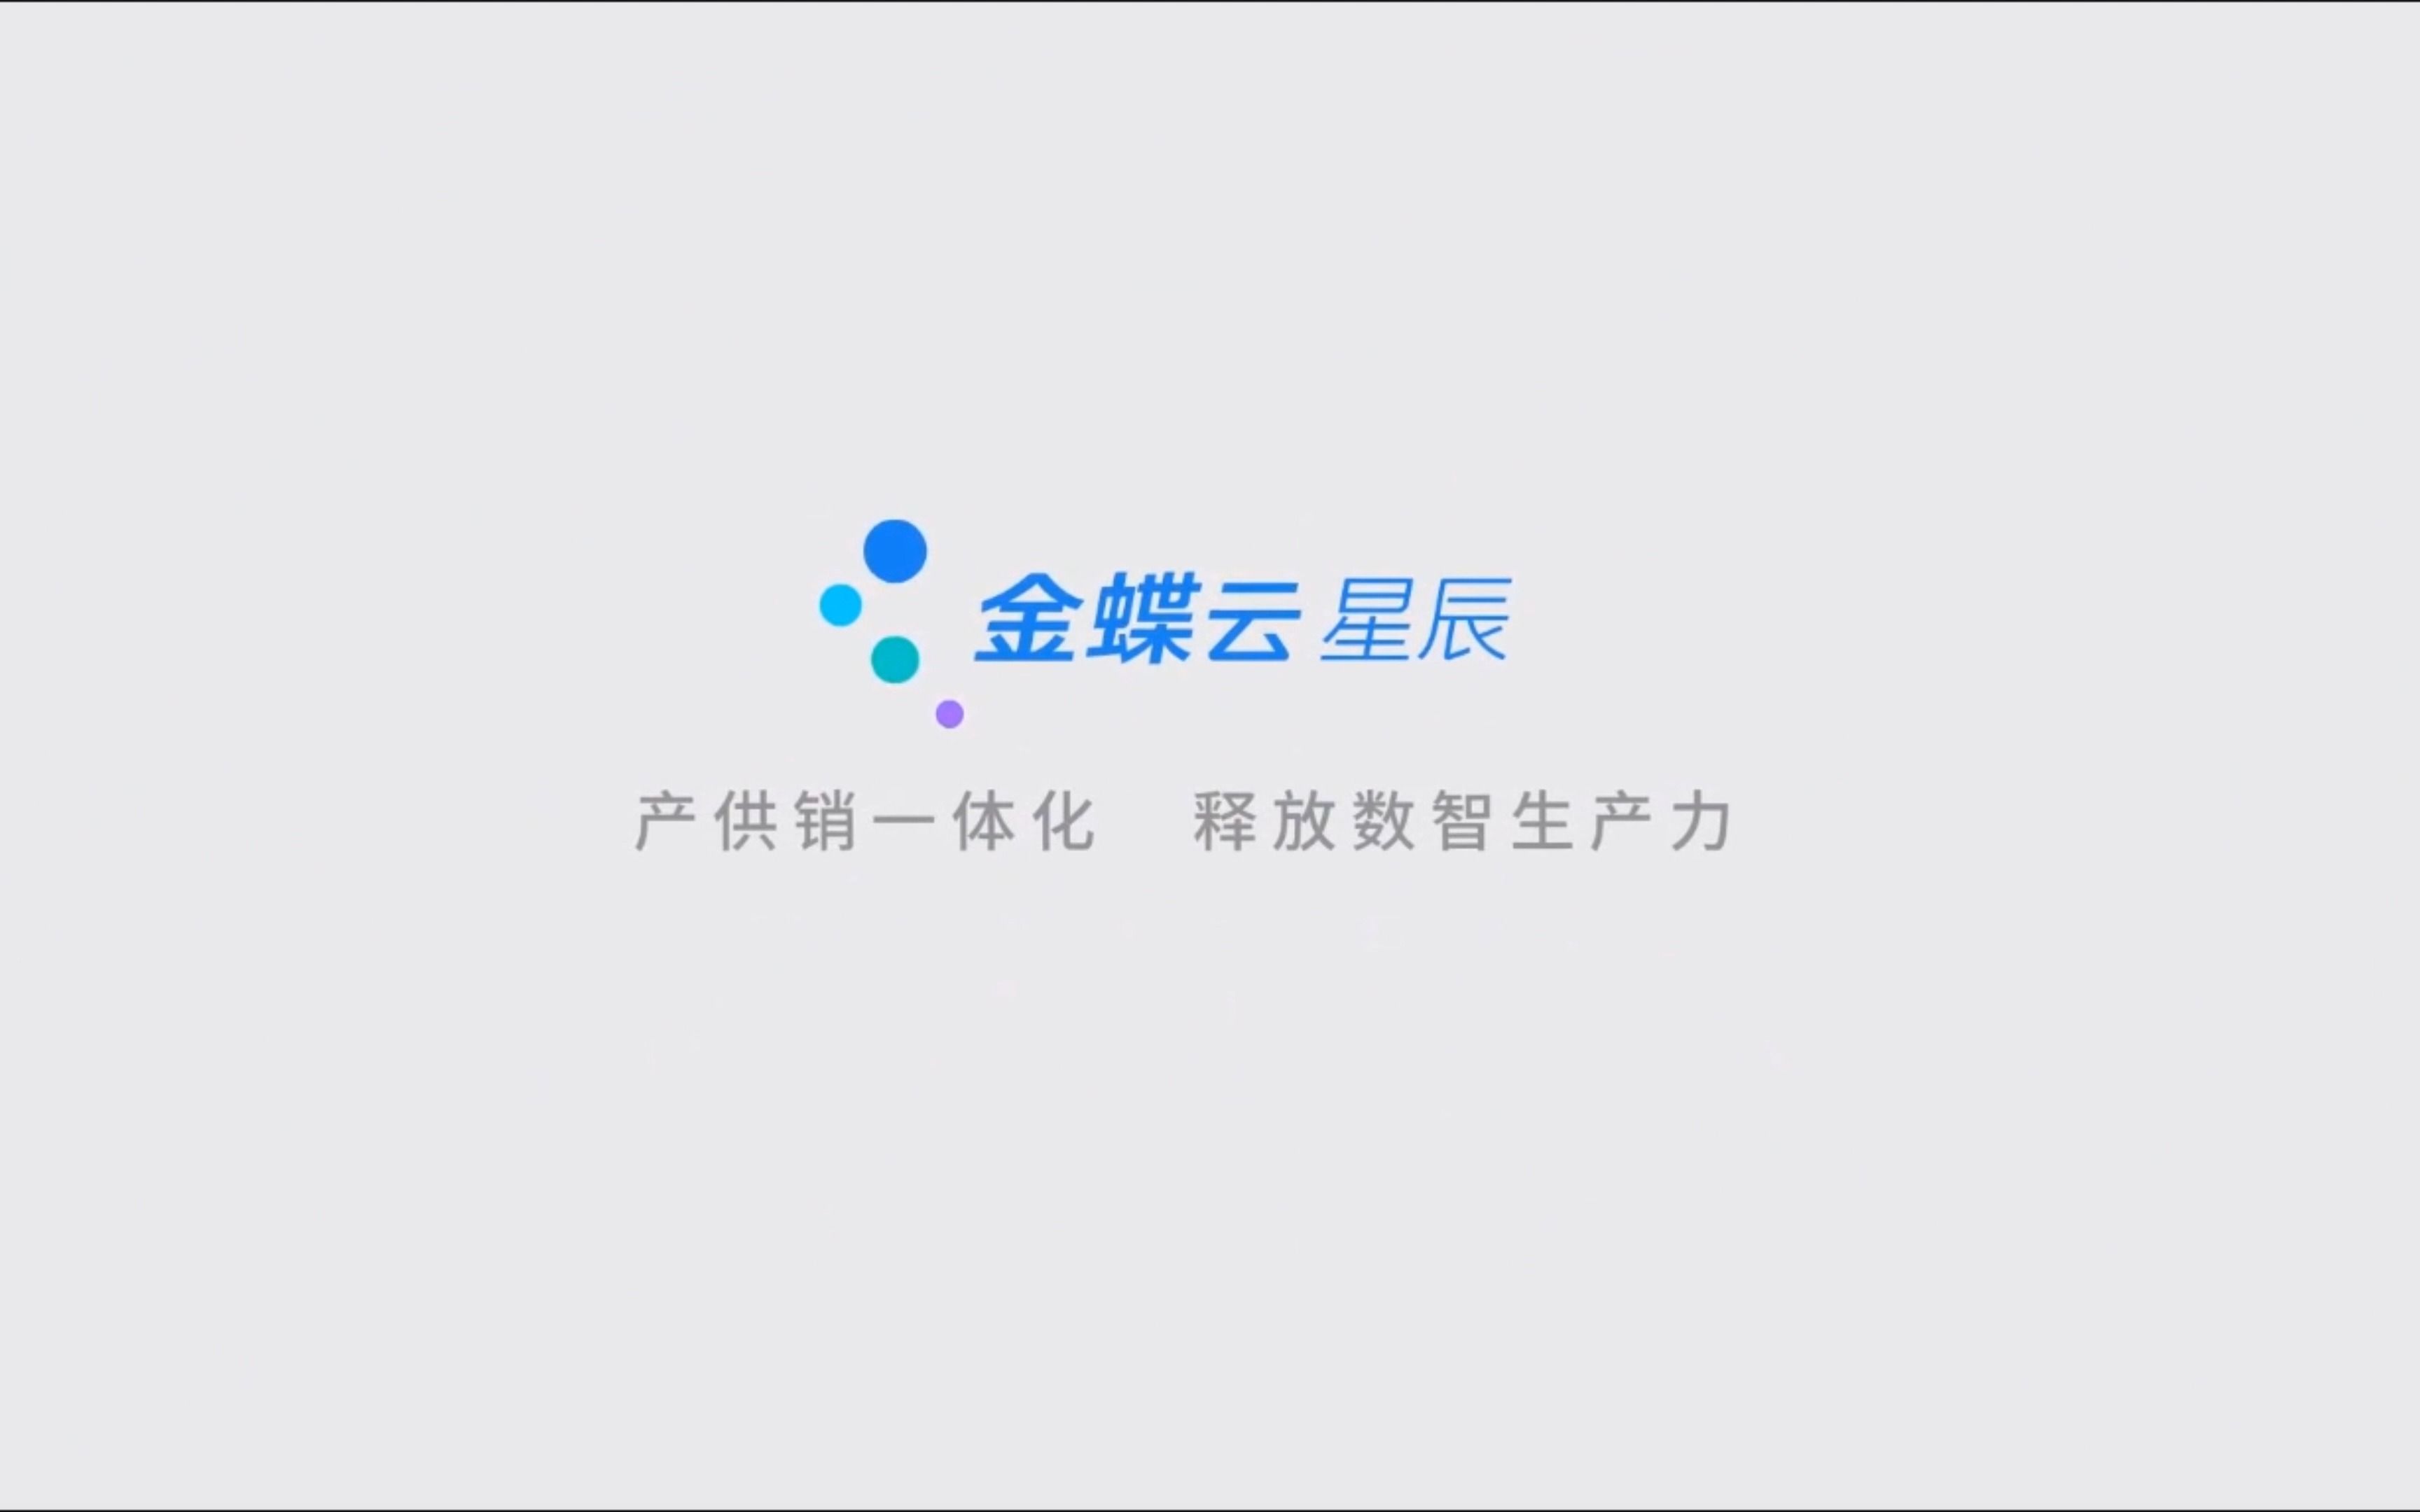 金蝶云 logo图片